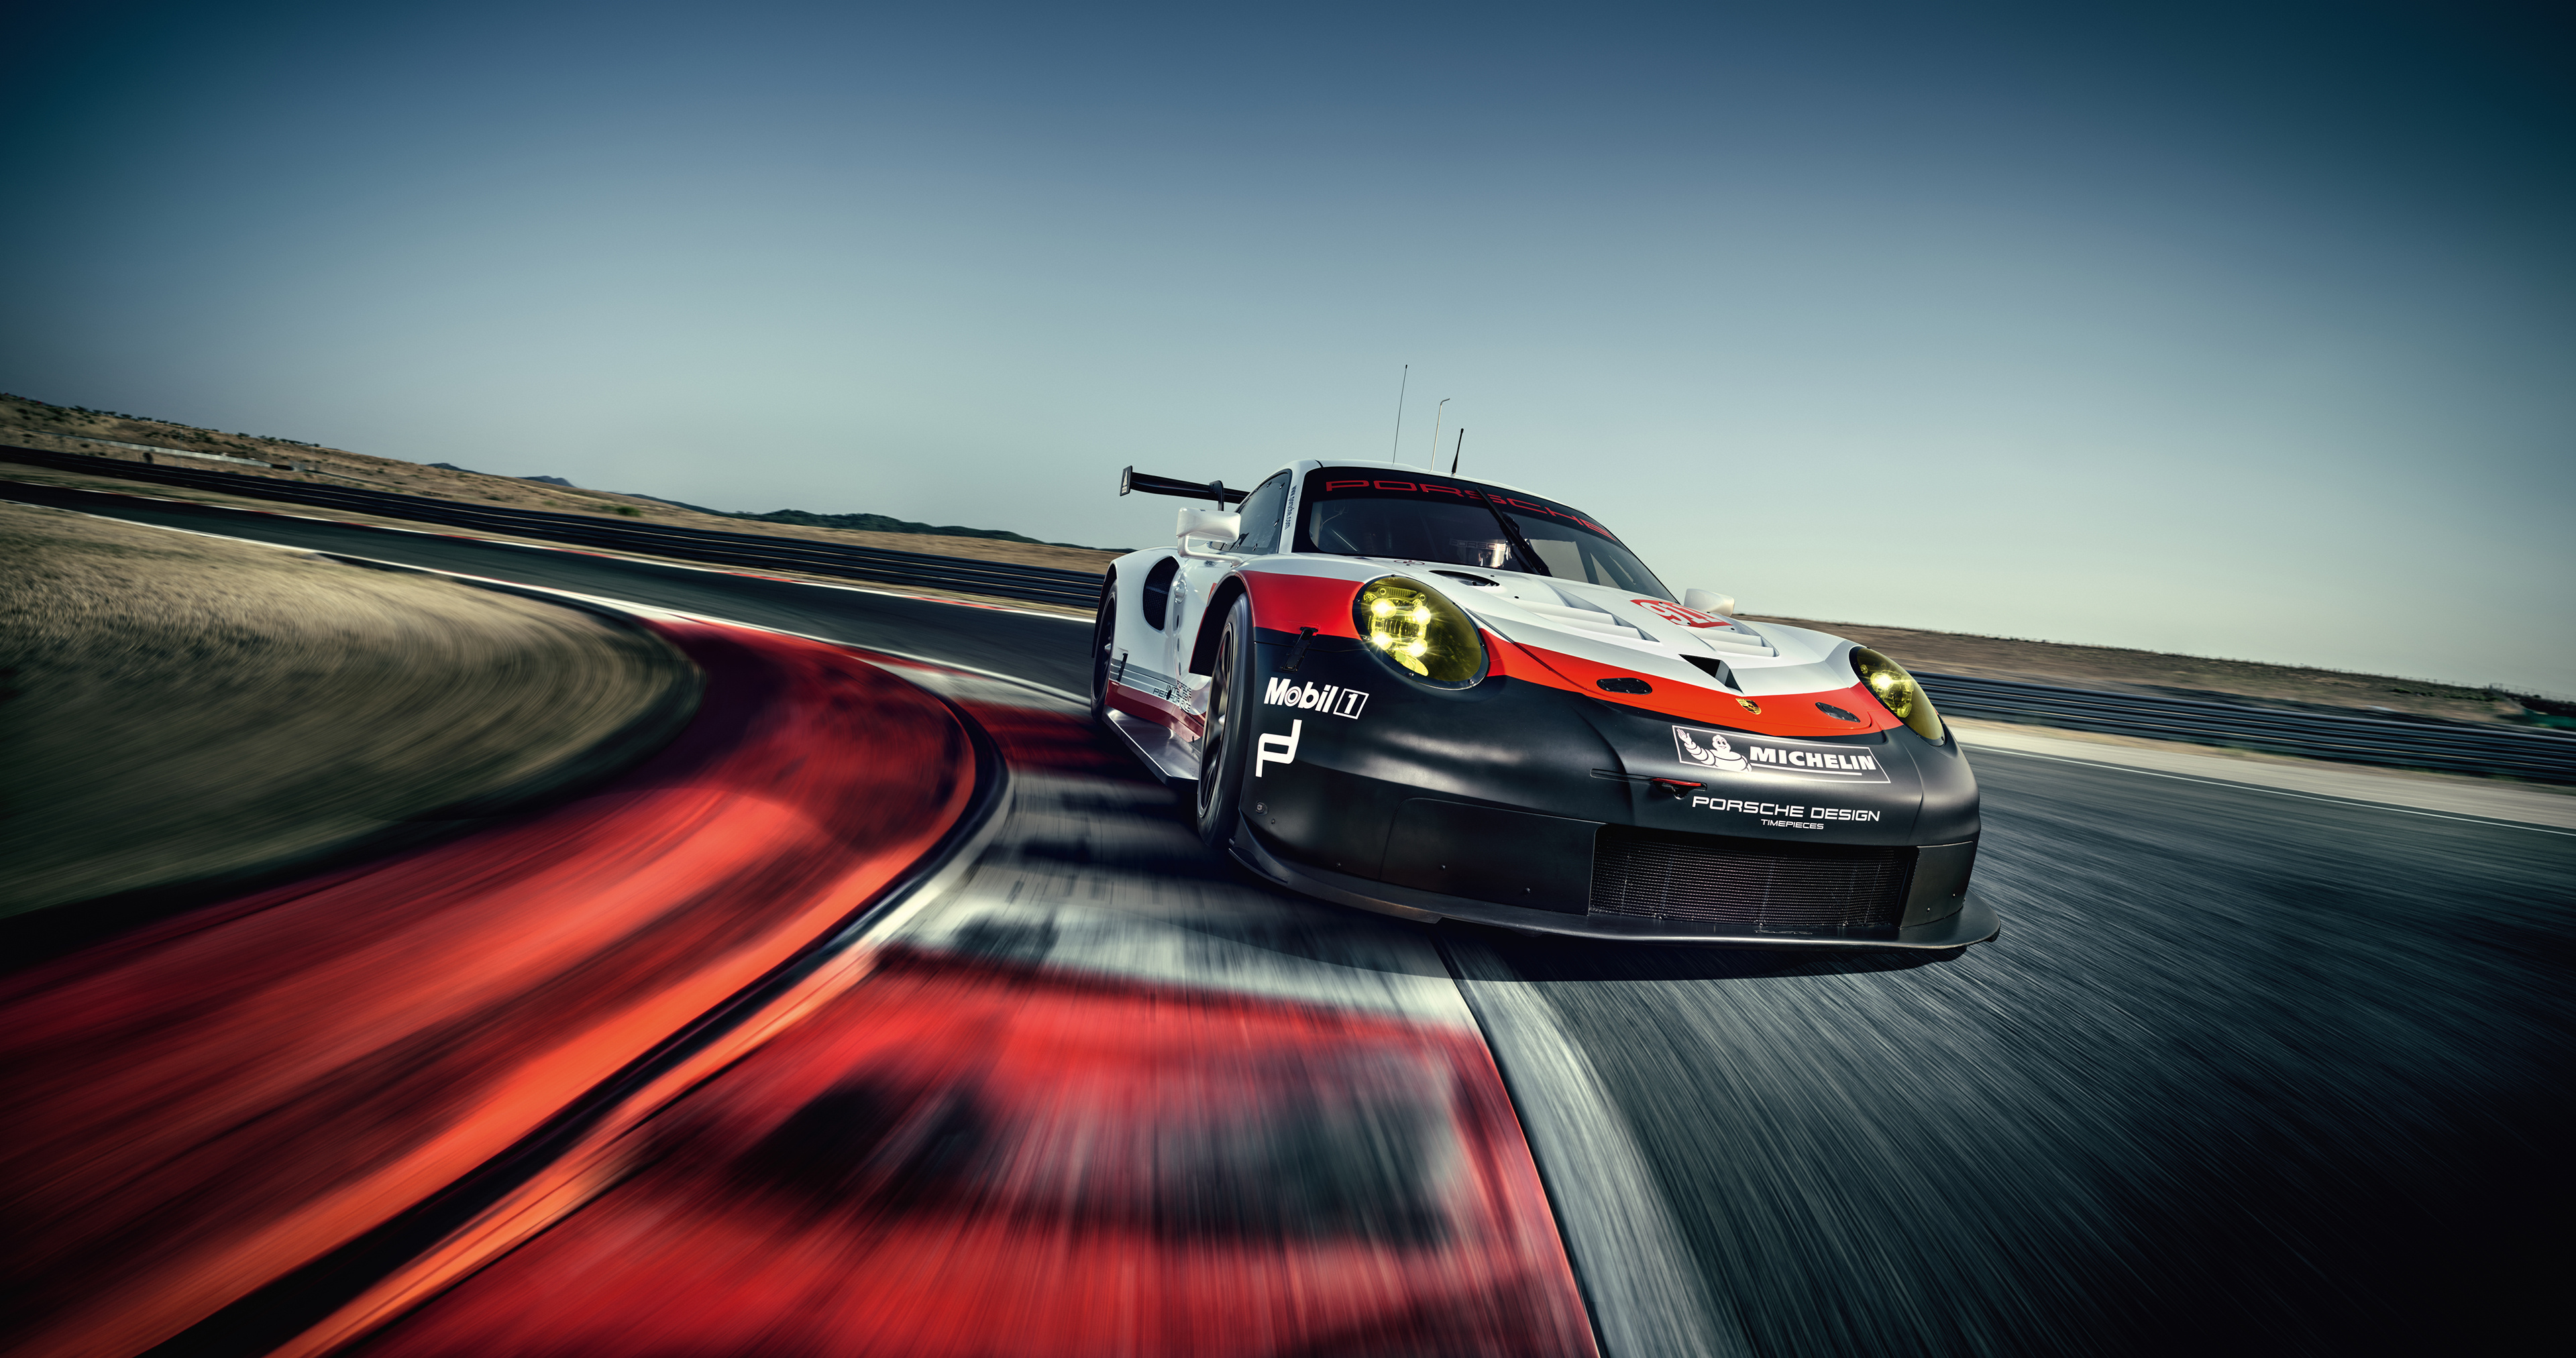 Porsche race car wallpapers, Porsche race car backgrounds, Race car wallpapers top, Backgrounds Porsche race, 3840x2030 HD Desktop